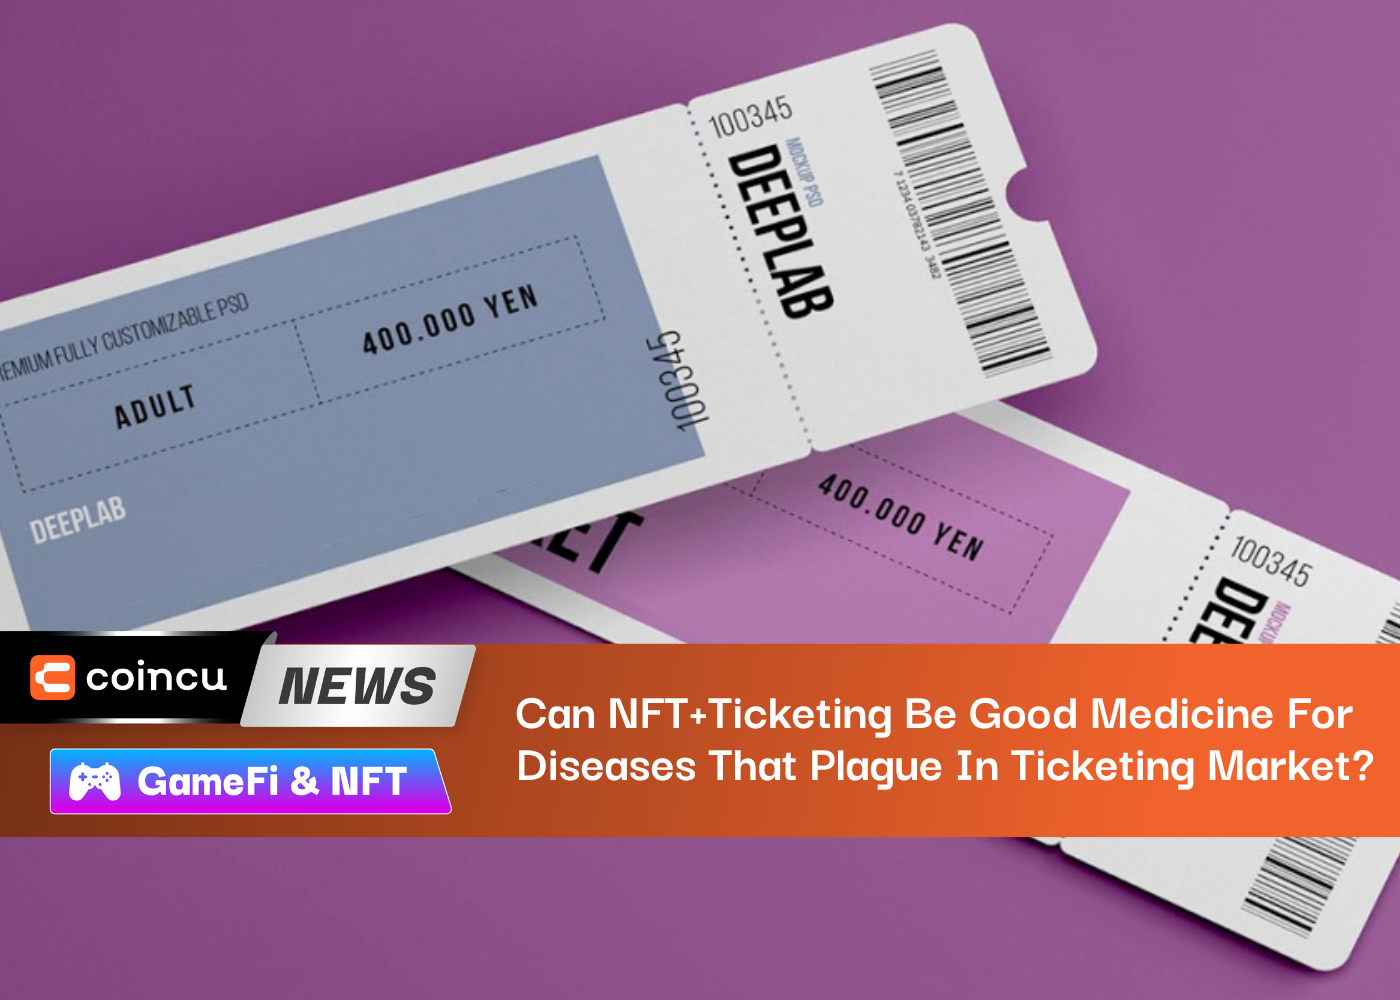 ¿Puede NFT+Ticketing ser una buena medicina para las enfermedades que afectan al mercado de ticketing?